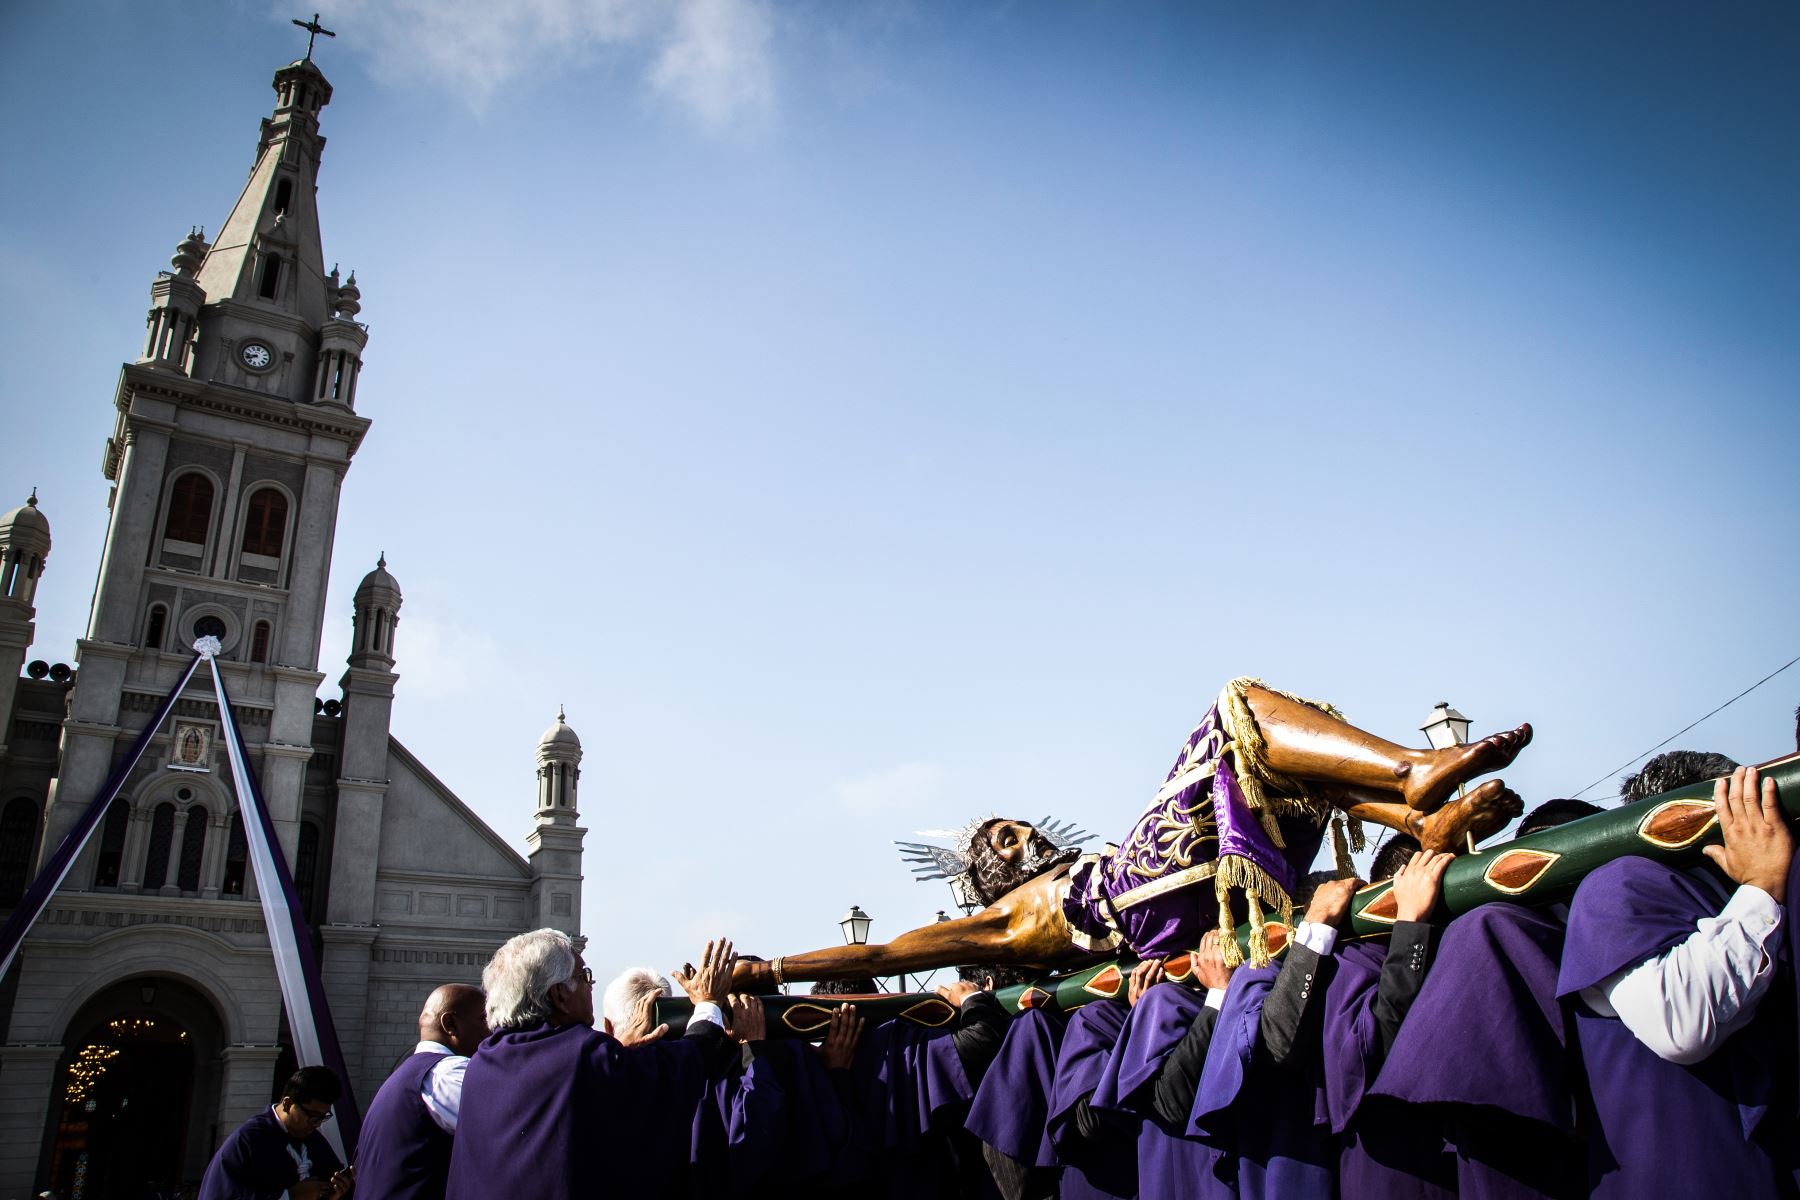 Ica celebra hoy la tradicional procesión del Señor de Luren, la imagen más venerada del catolicismo en Ica, una manifestación religiosa que congrega a miles de devotos. Foto: Genry Emerson Bautista